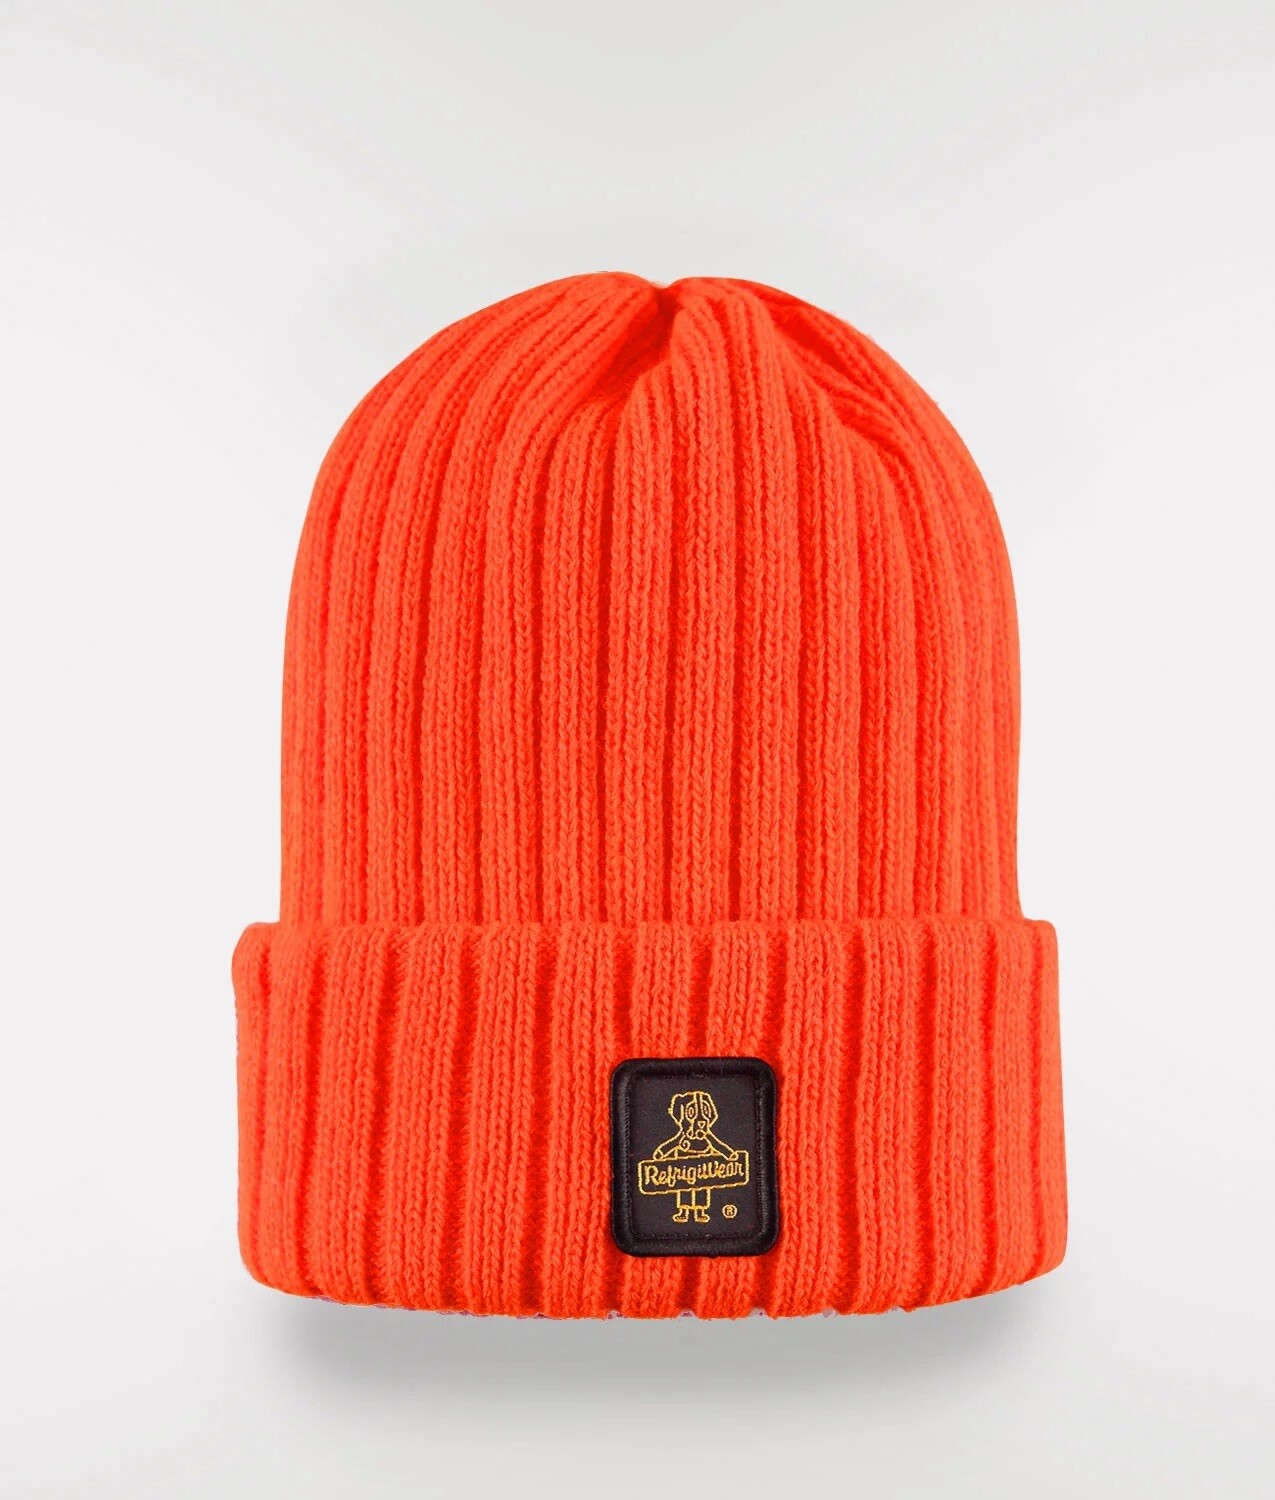 Cappellino Refrigiwear art.B05500 MA9083 Colorado Hat colore arancio fluo